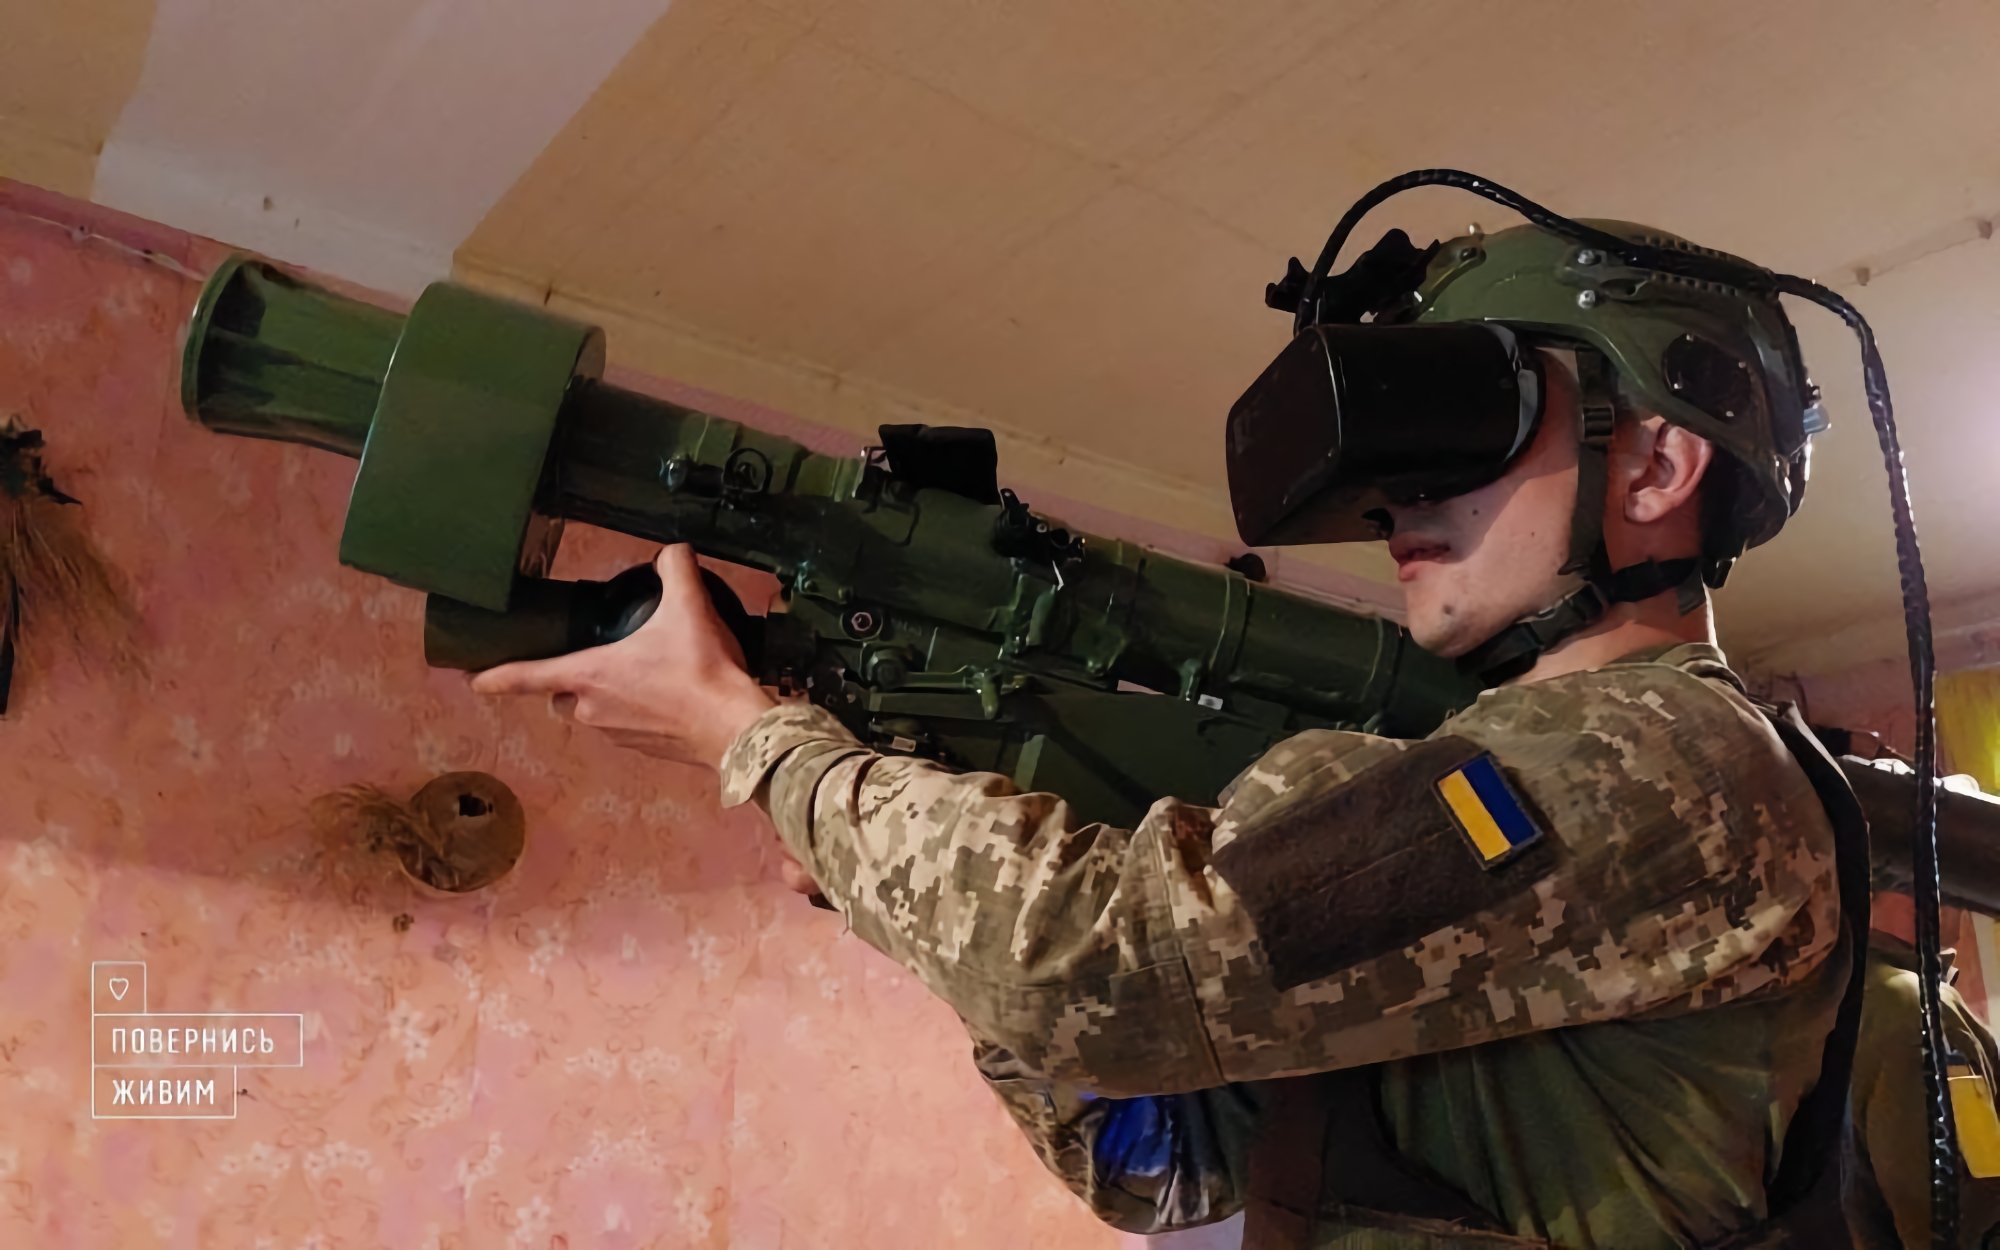 Fundacja Turn Back Alive kupiła symulator z hełmem wirtualnej rzeczywistości dla Sił Zbrojnych Ukrainy. Z jego pomocą żołnierze nauczą się posługiwać MANPADAMI Igla